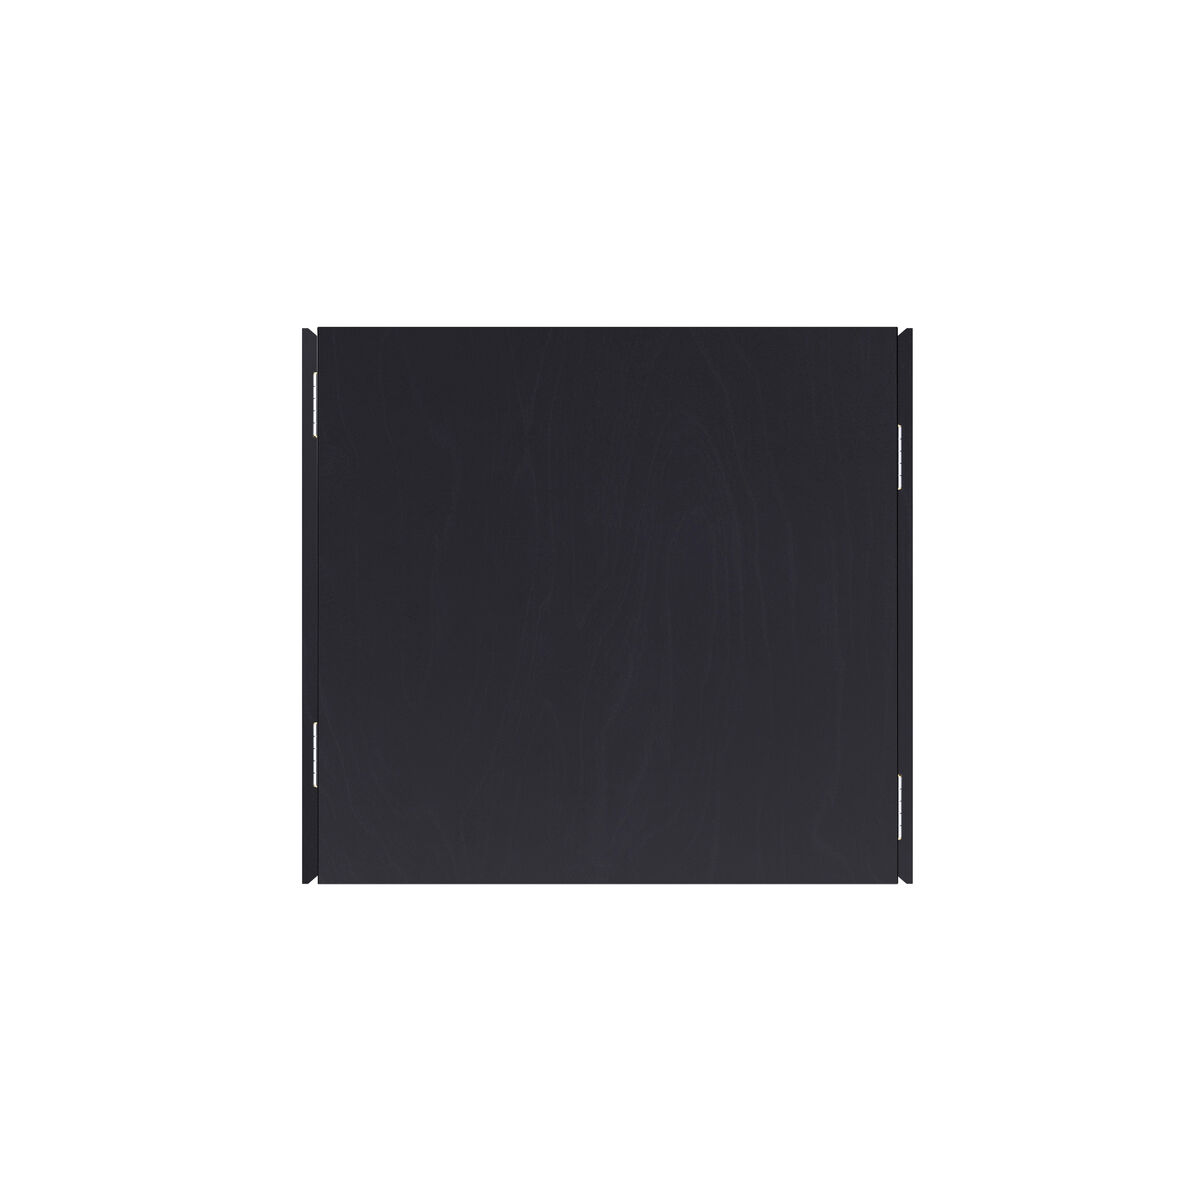 Стол Пегас Classic Drop Leaf (64-102)х61 см, чёрный